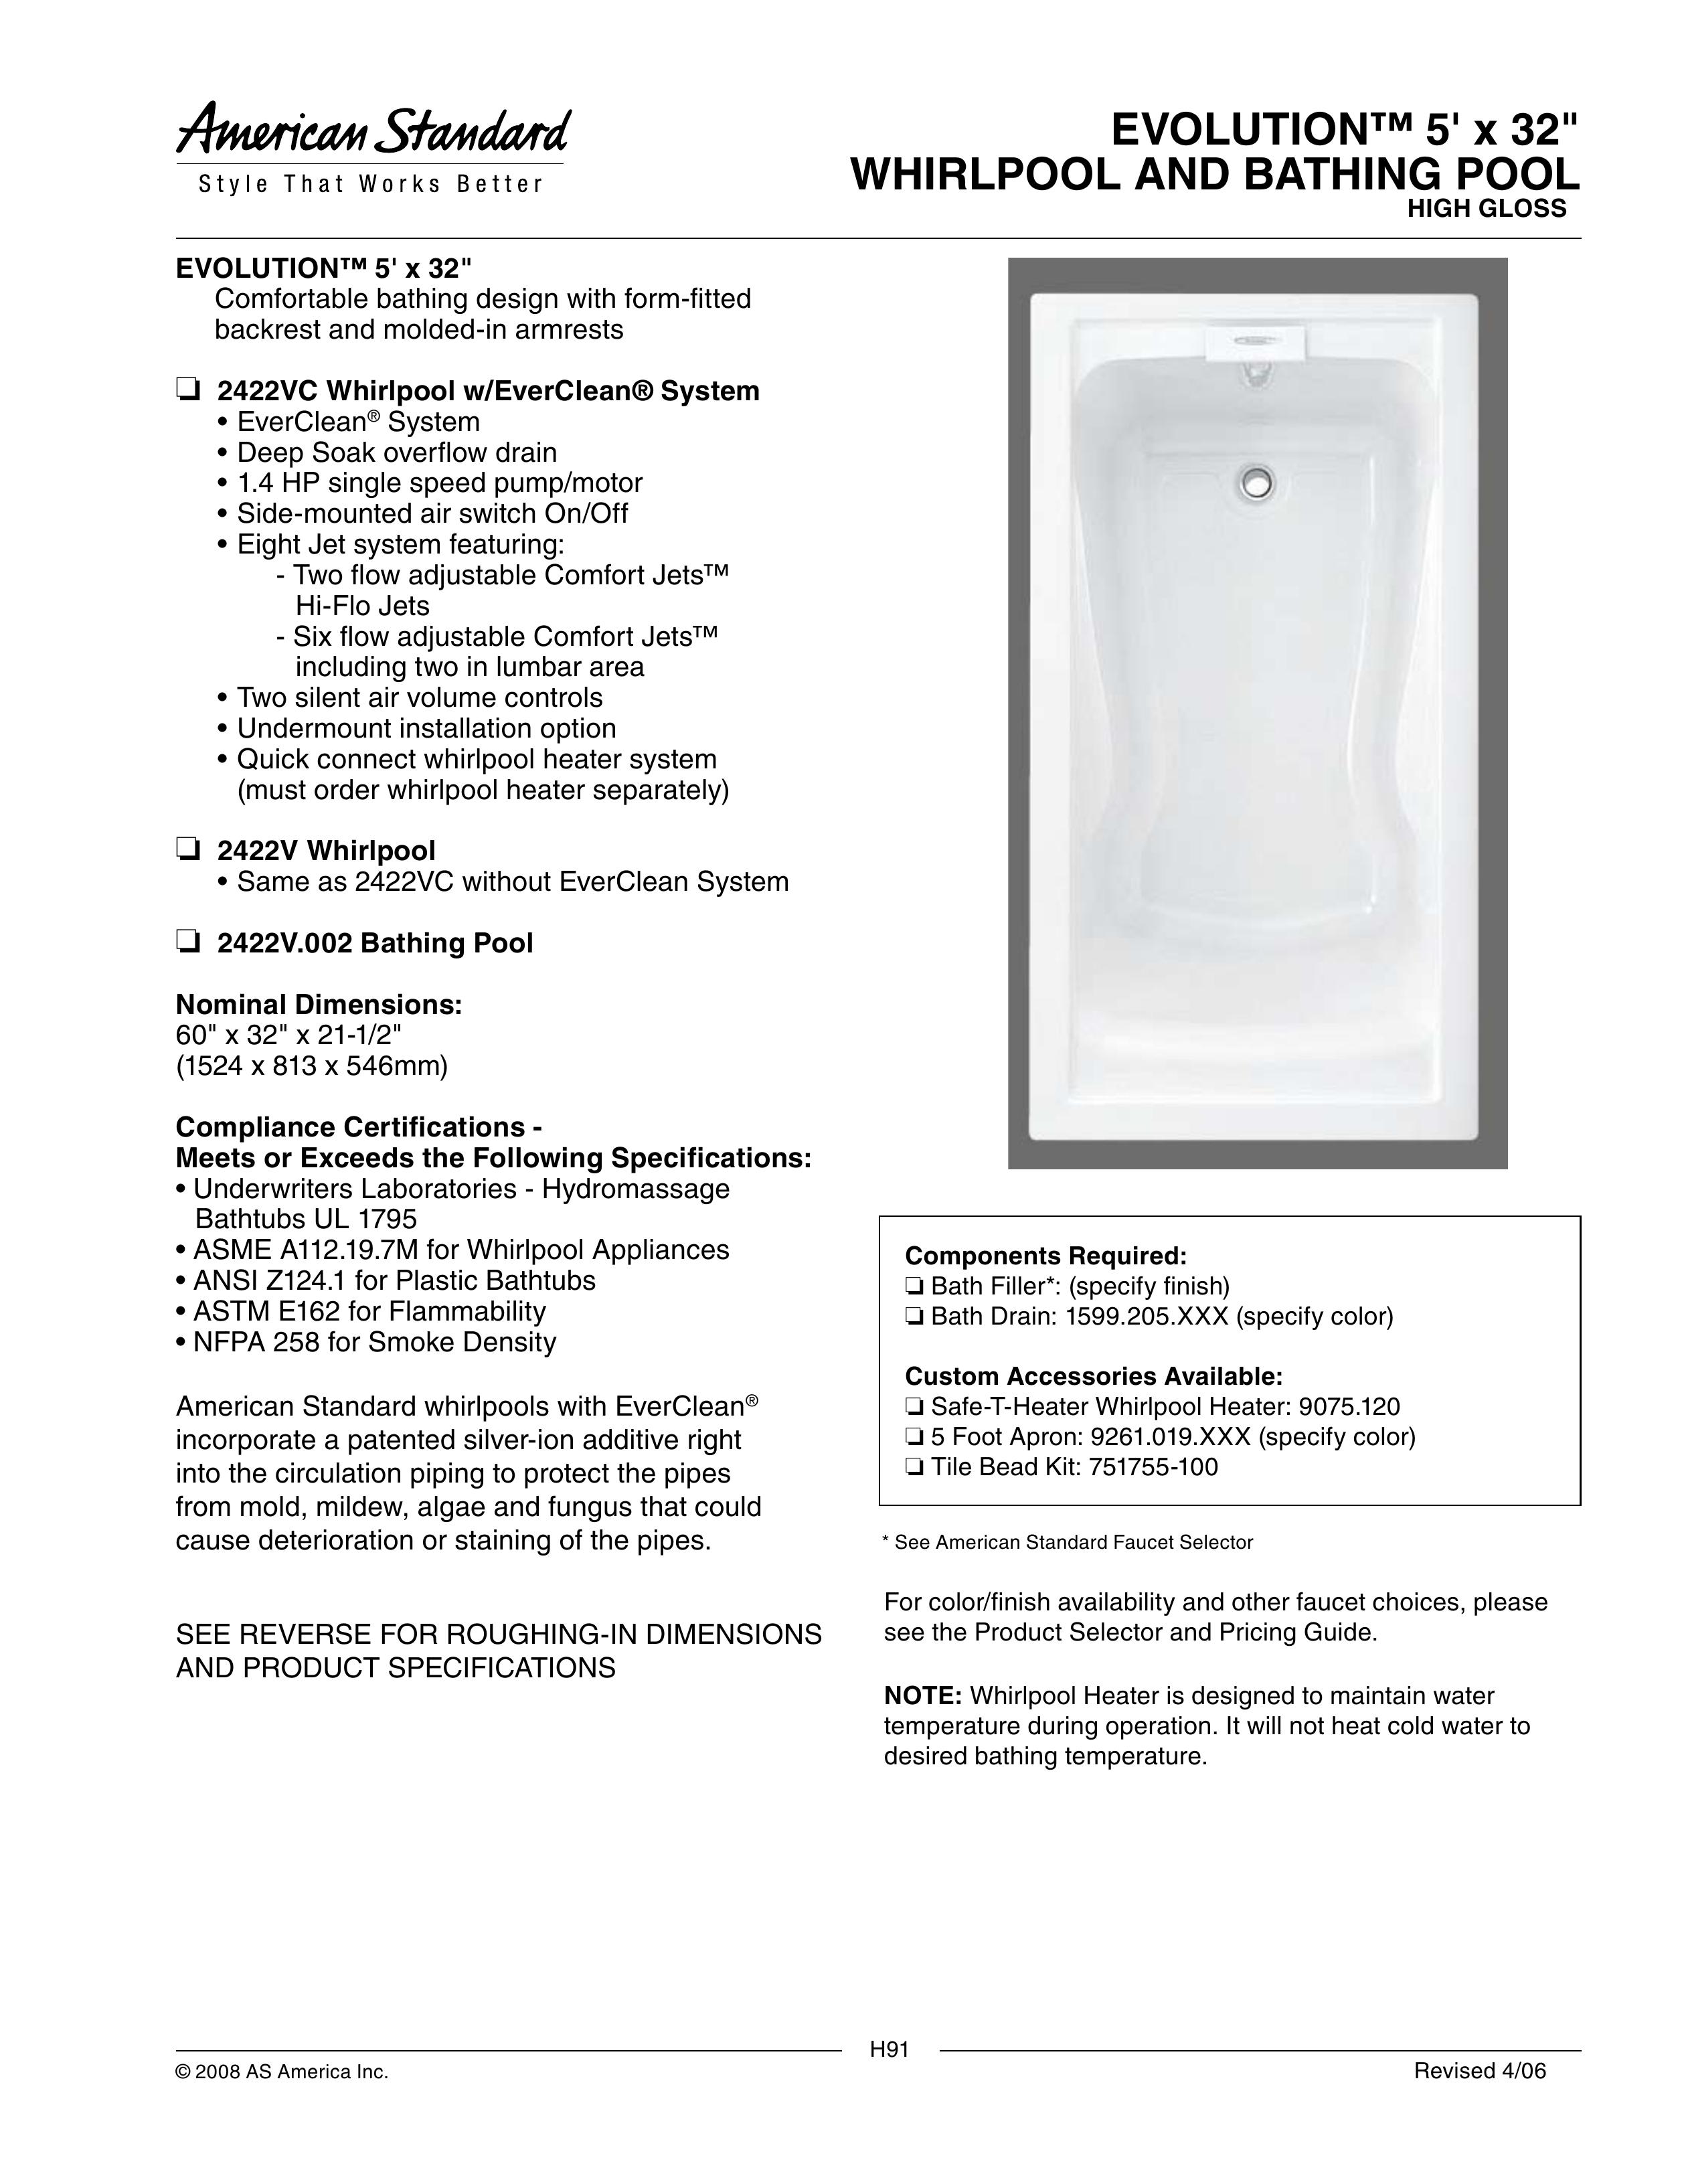 American Standard 1599.205 Hot Tub User Manual